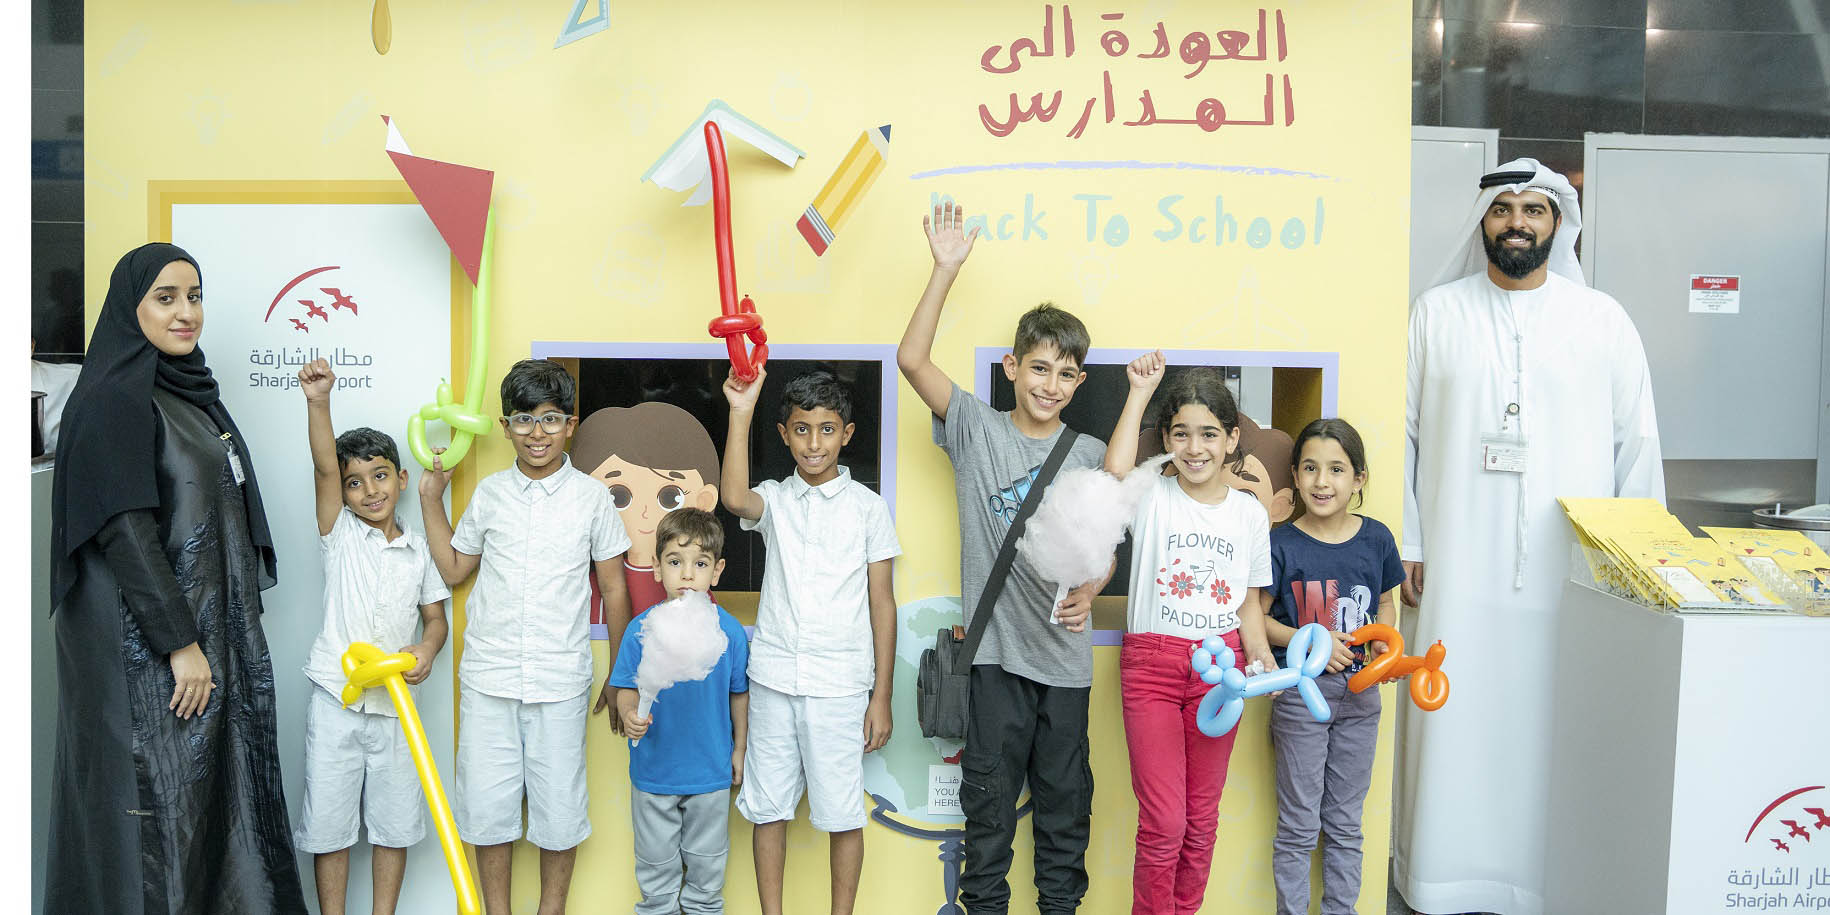 مطار الشارقة يختتم فعاليات الصيف باستقبال العائلات وأطفالهم بمناسبة "العودة إلى المدارس"